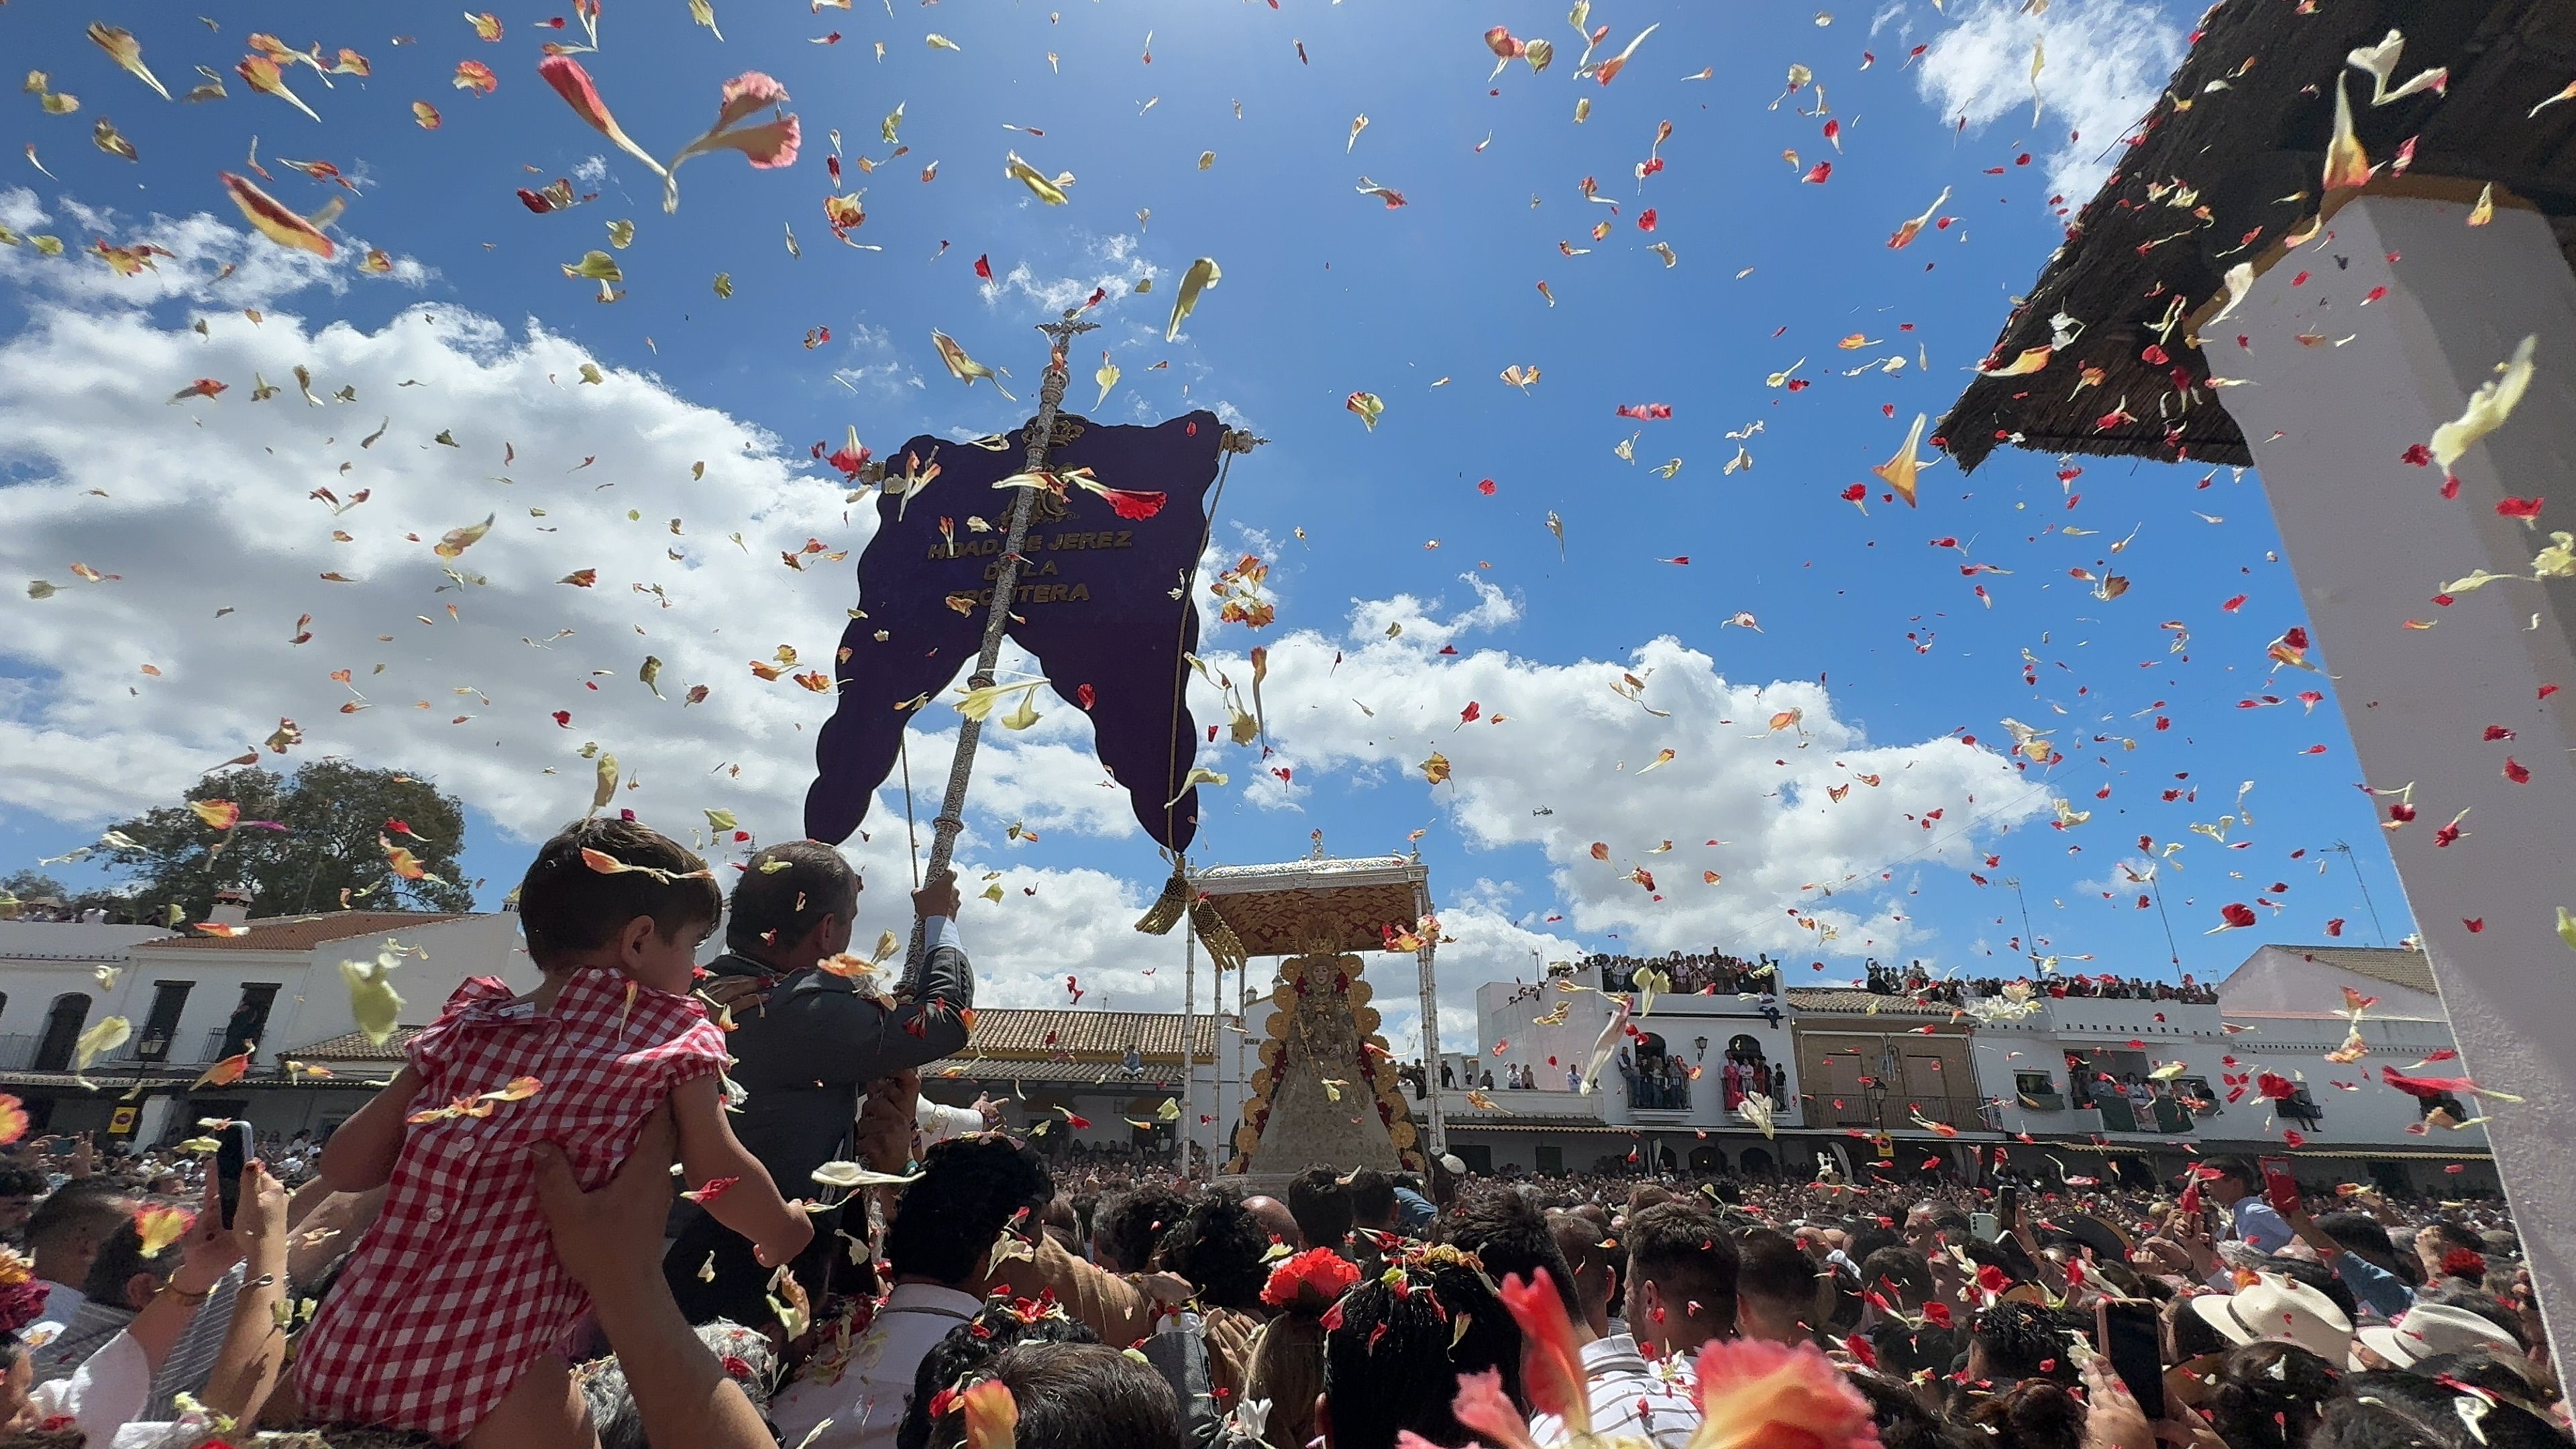 A las 12.45 horas la Virgen del Rocío recibía el rezo de la salve y los vivas clásicos de la romería por parte de la Hermandad de Jerez.